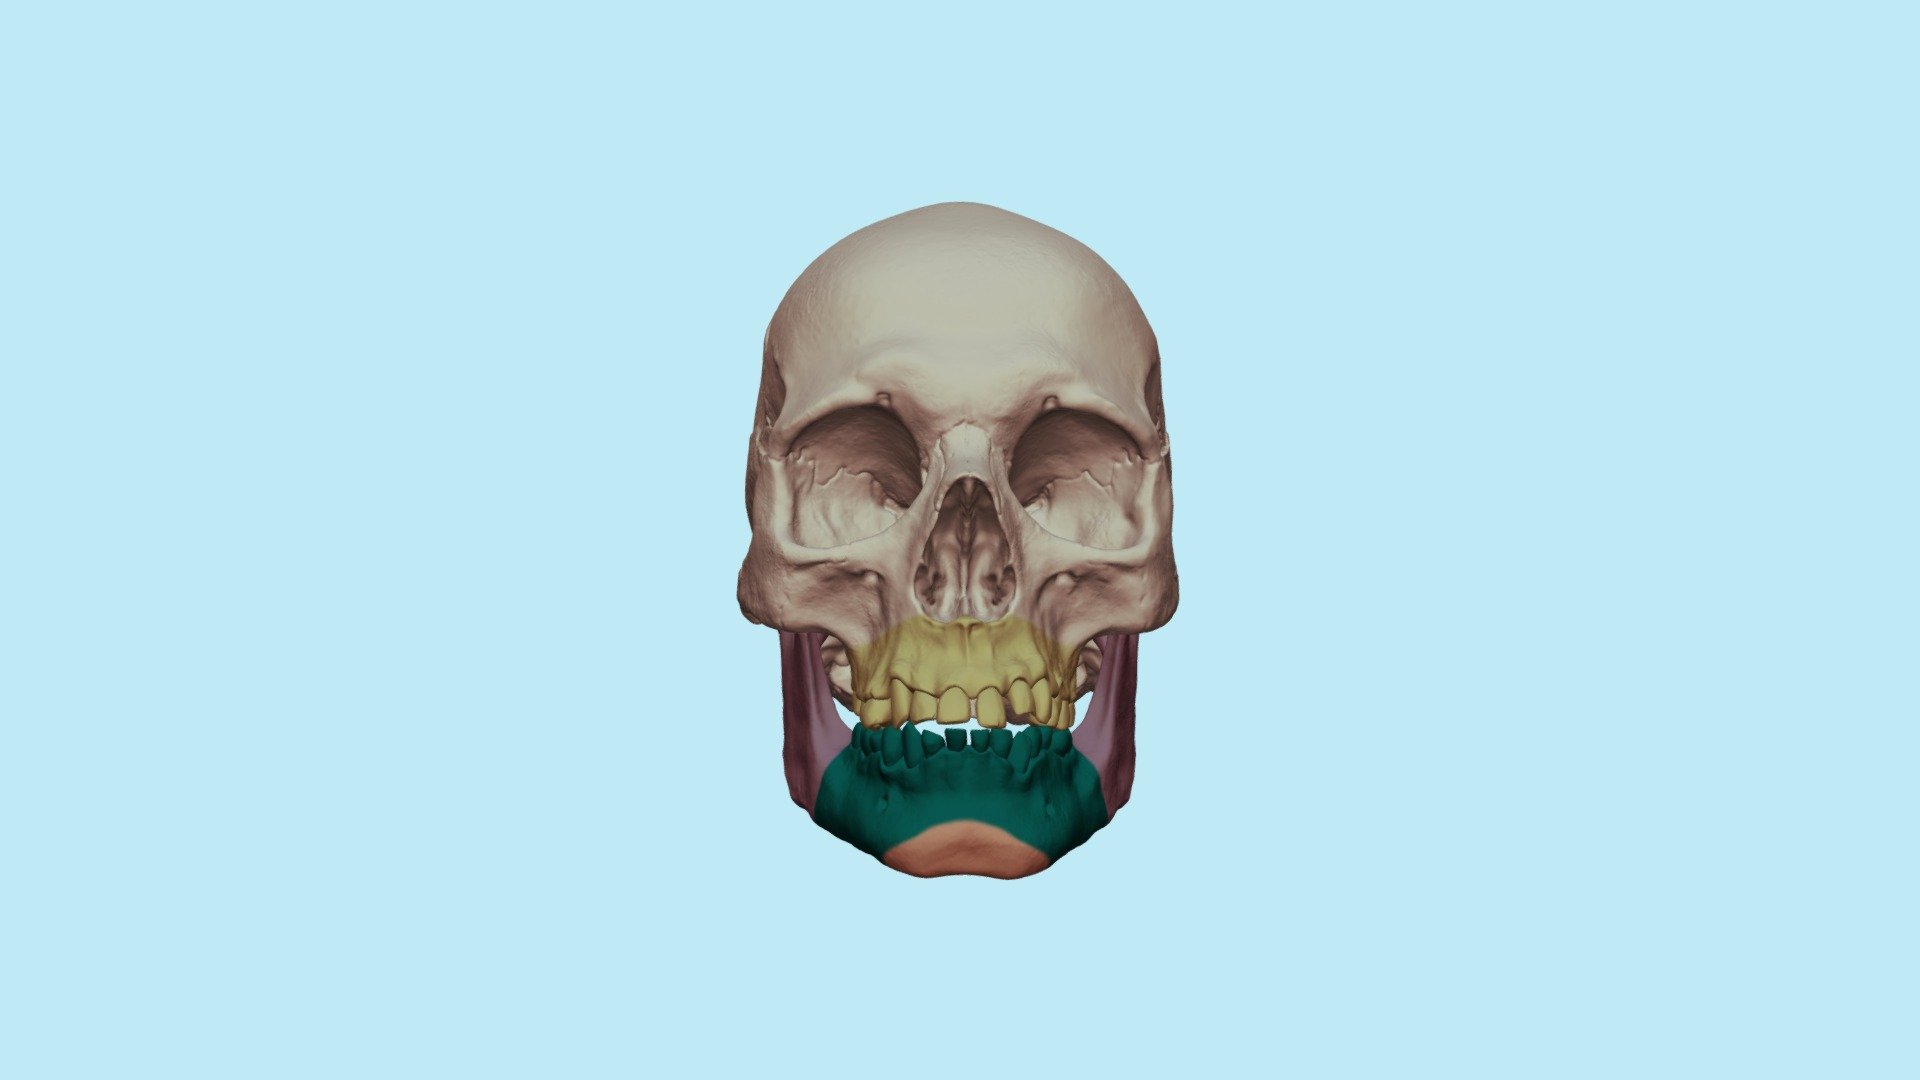 Асимметрия челюсти - 3D model by Dentell [73eff54] - Sketchfab